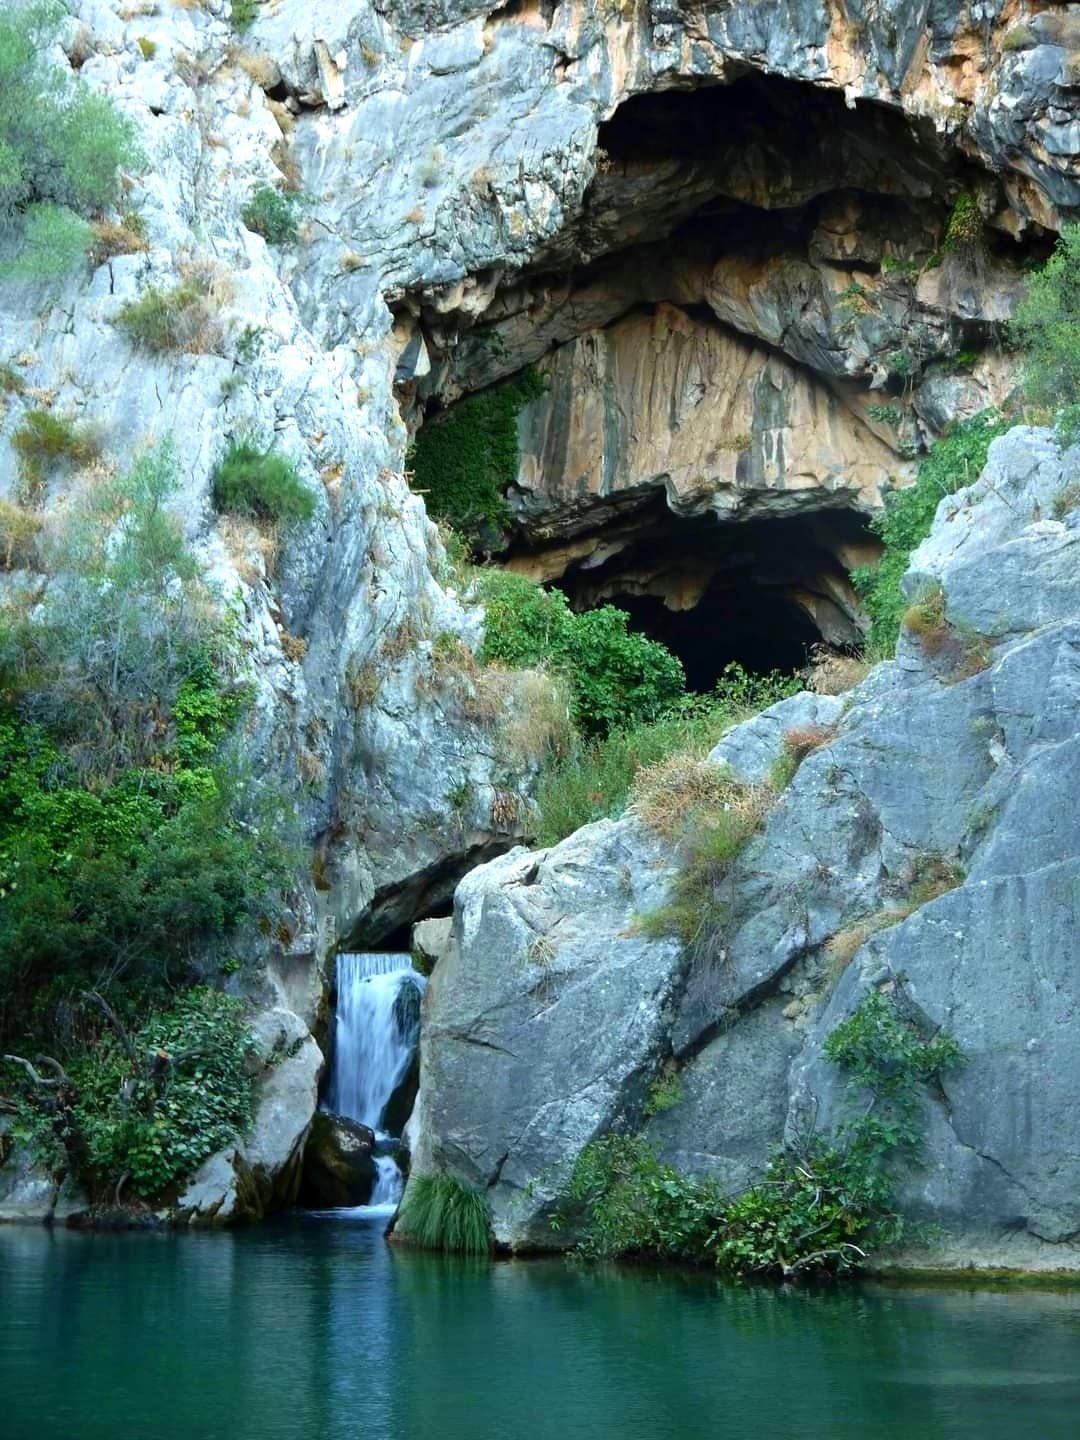 Cueva del Gato, Spain. 5